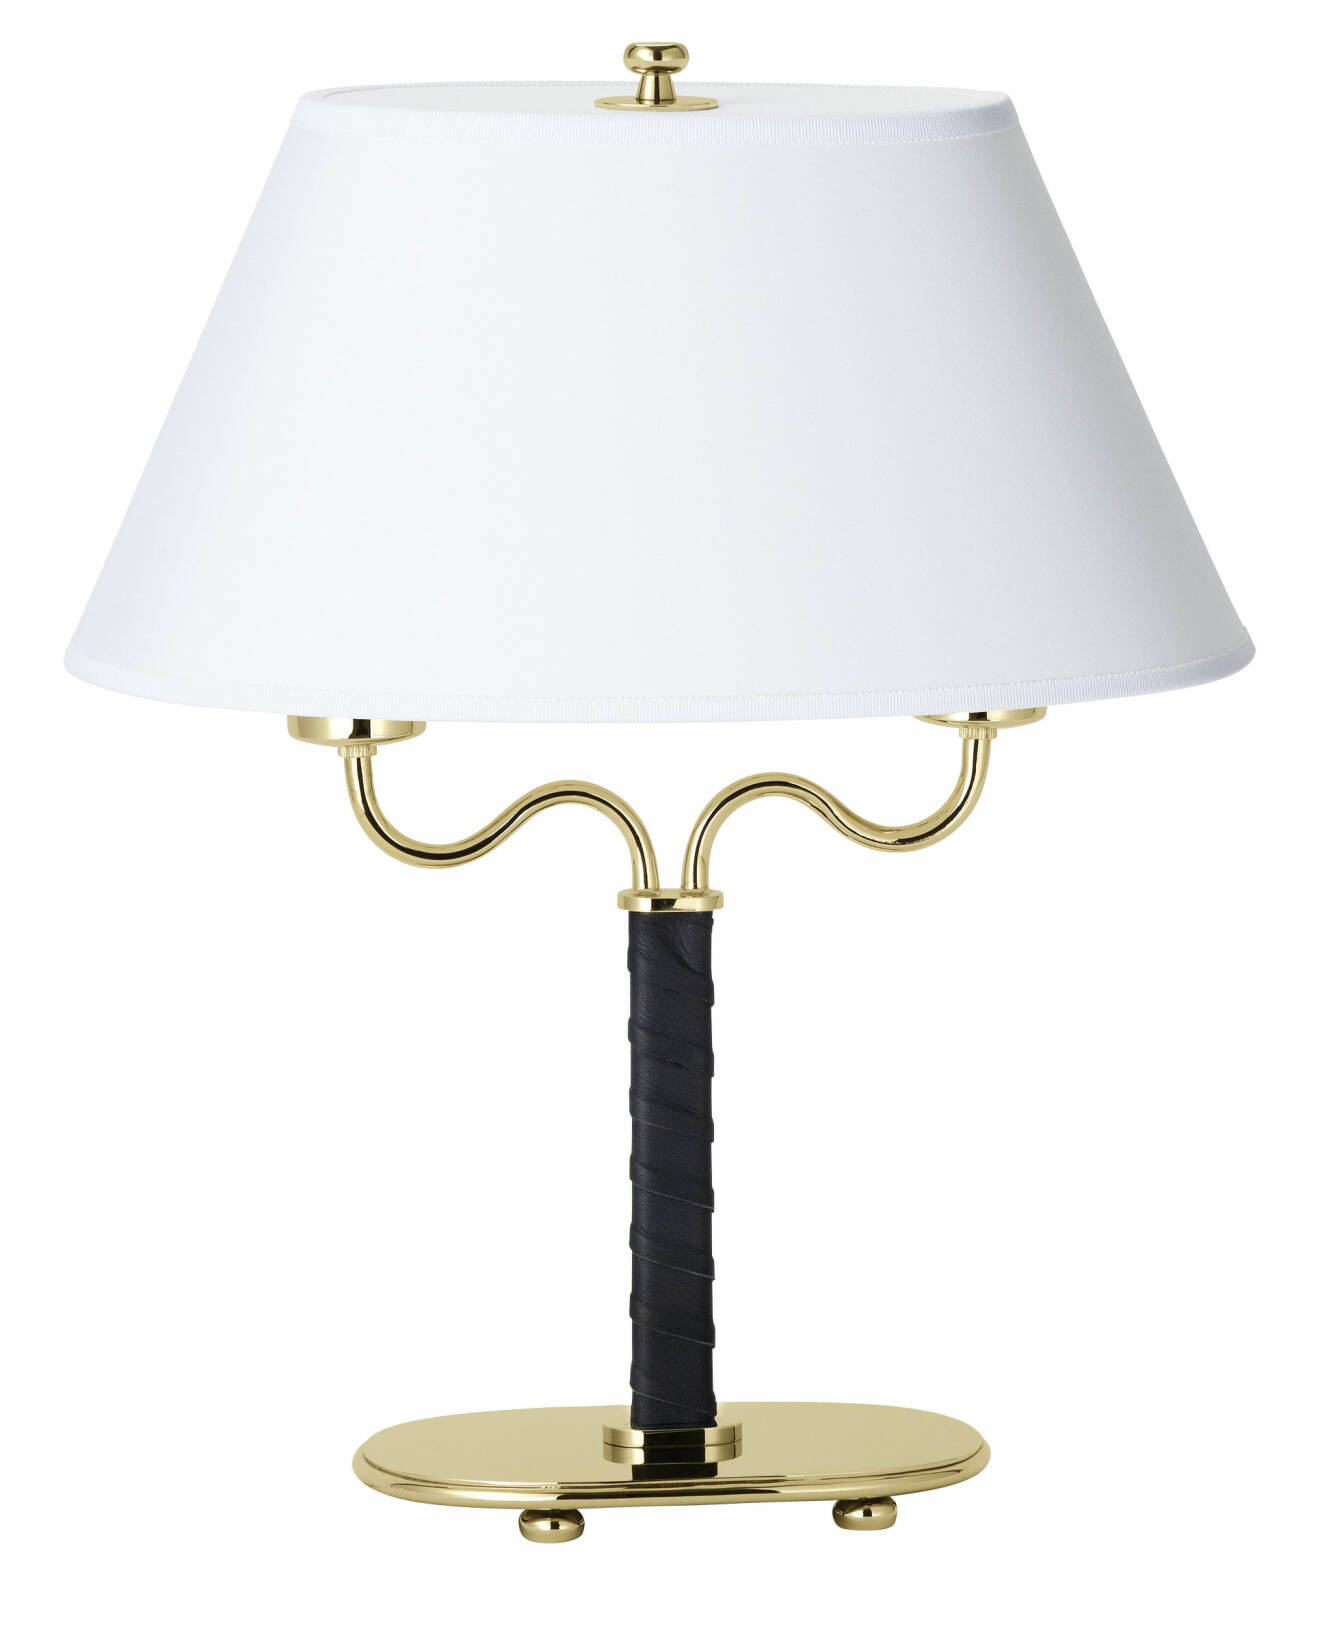 En klassisk skönhet är bordslampan 2388 formgiven av Josef Frank för Svenskt Tenn.